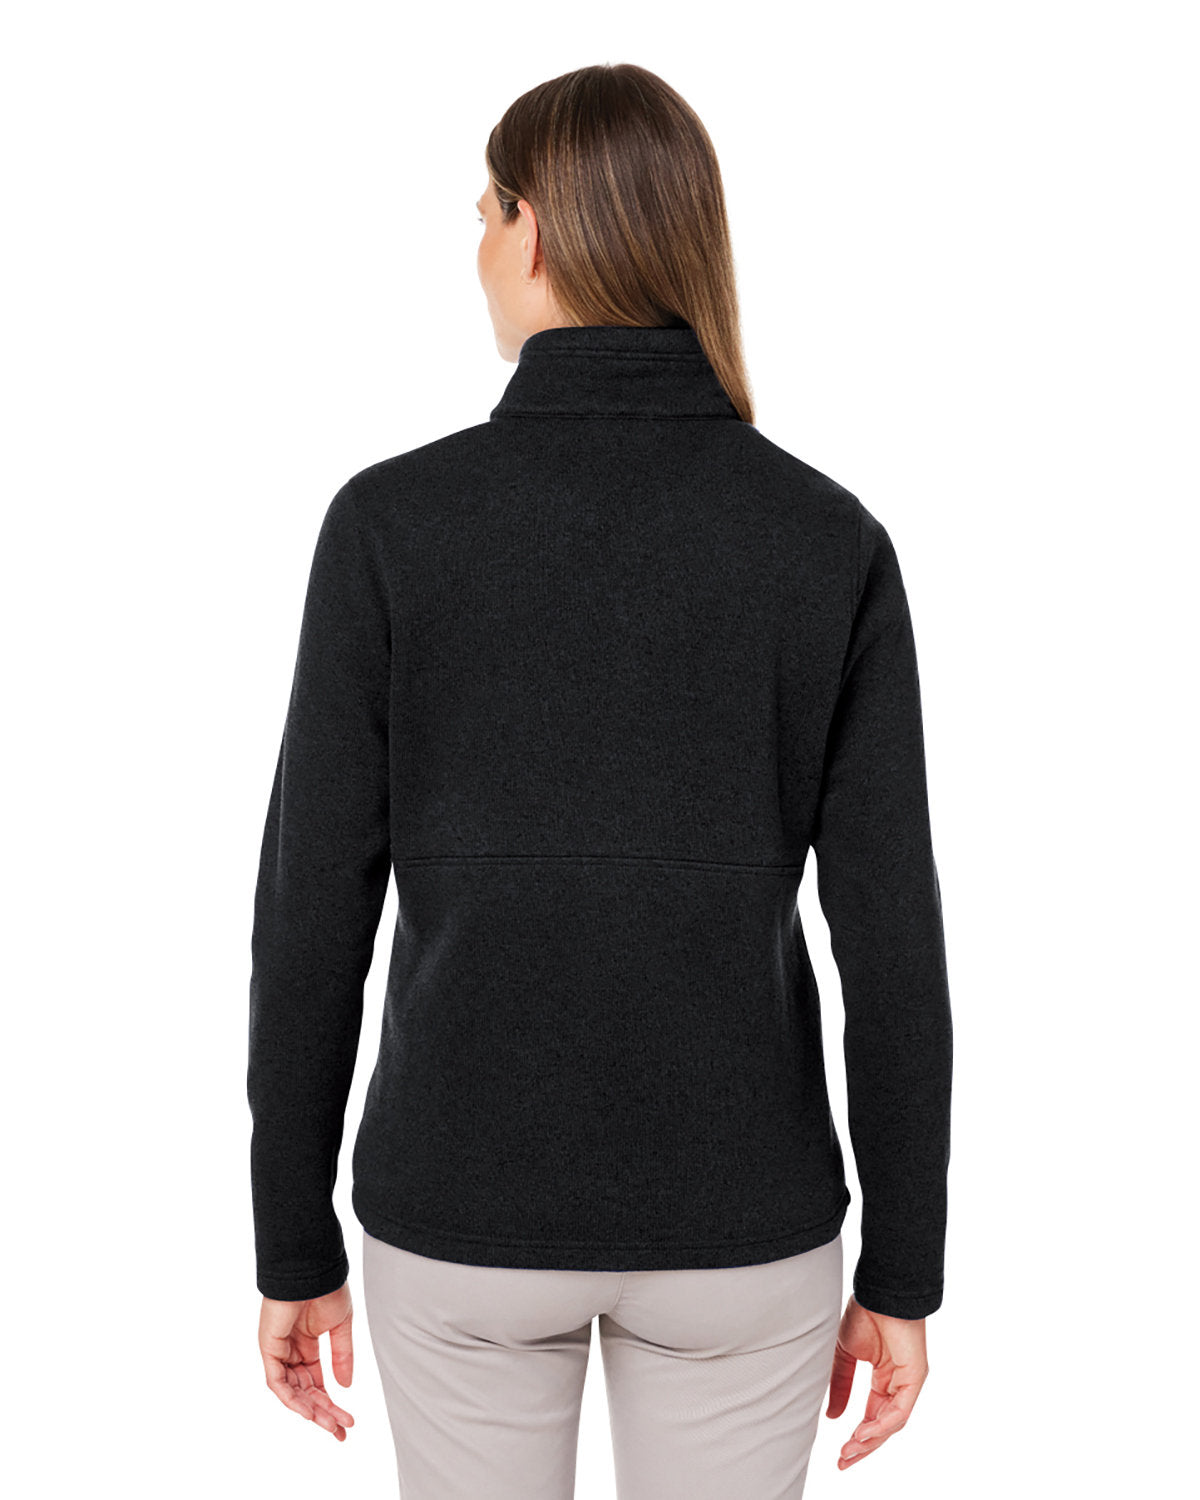 Marmot Ladies Dropline Sweater Fleece Half-Zips, Black